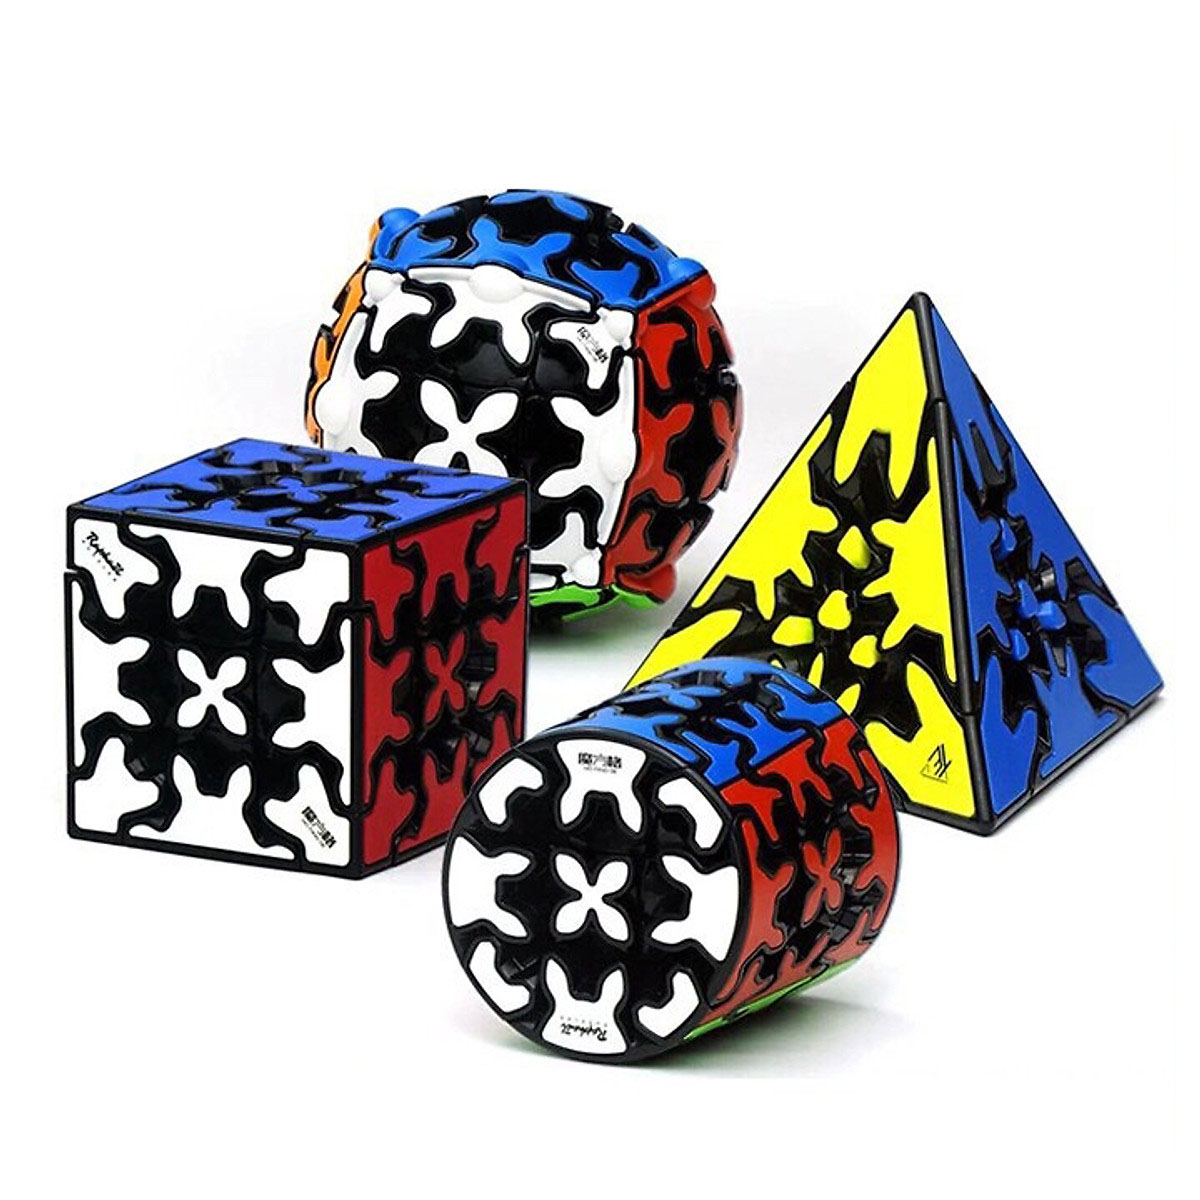 Rubik biến thể Gear cao cấp: Bộ 4 sản phẩm